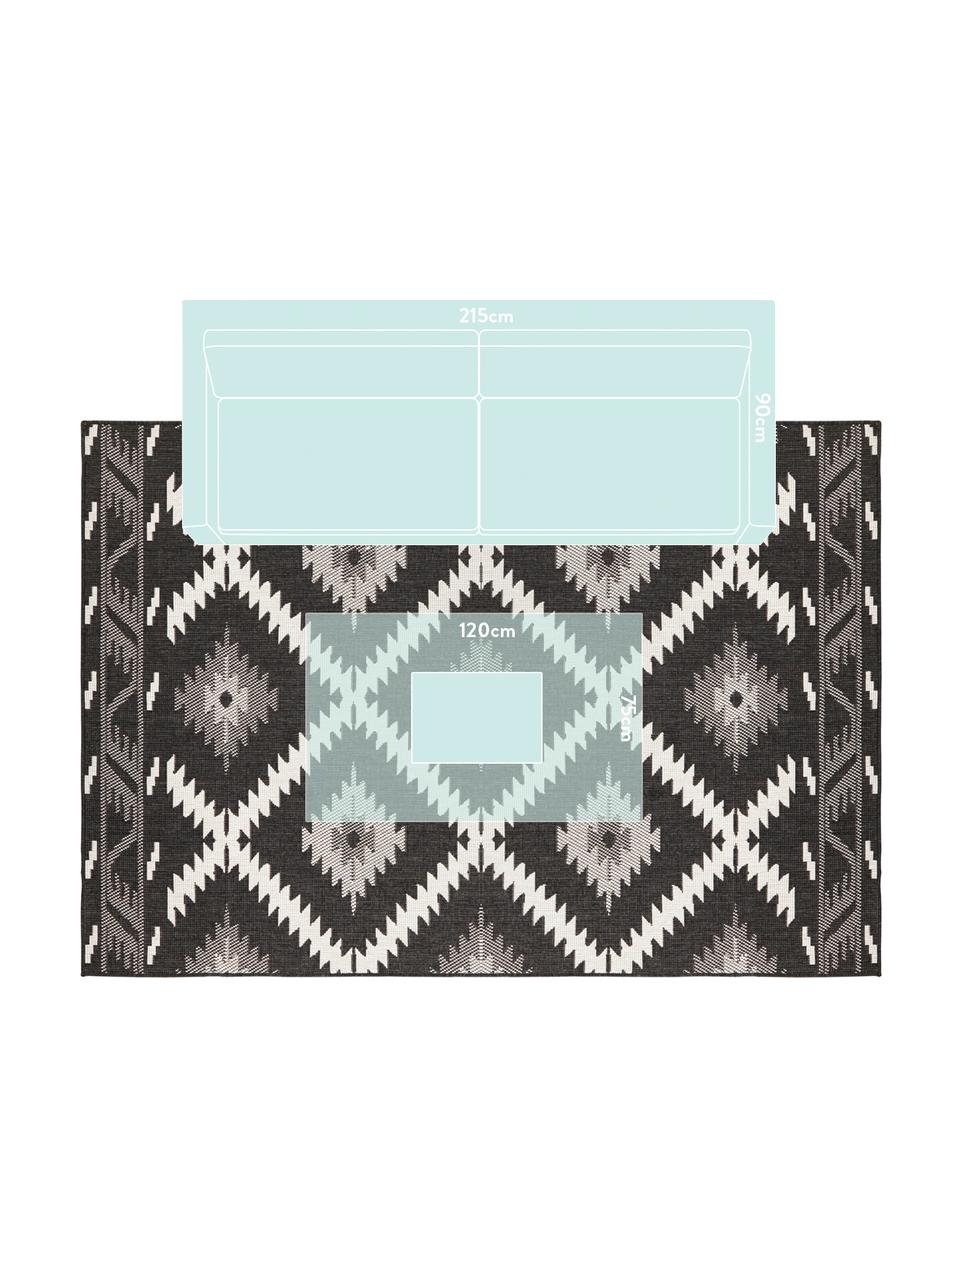 Dwustronny dywan wewnętrzny/zewnętrzny Malibu, Czarny, kremowy, 200 x 290 cm (Rozmiar L)